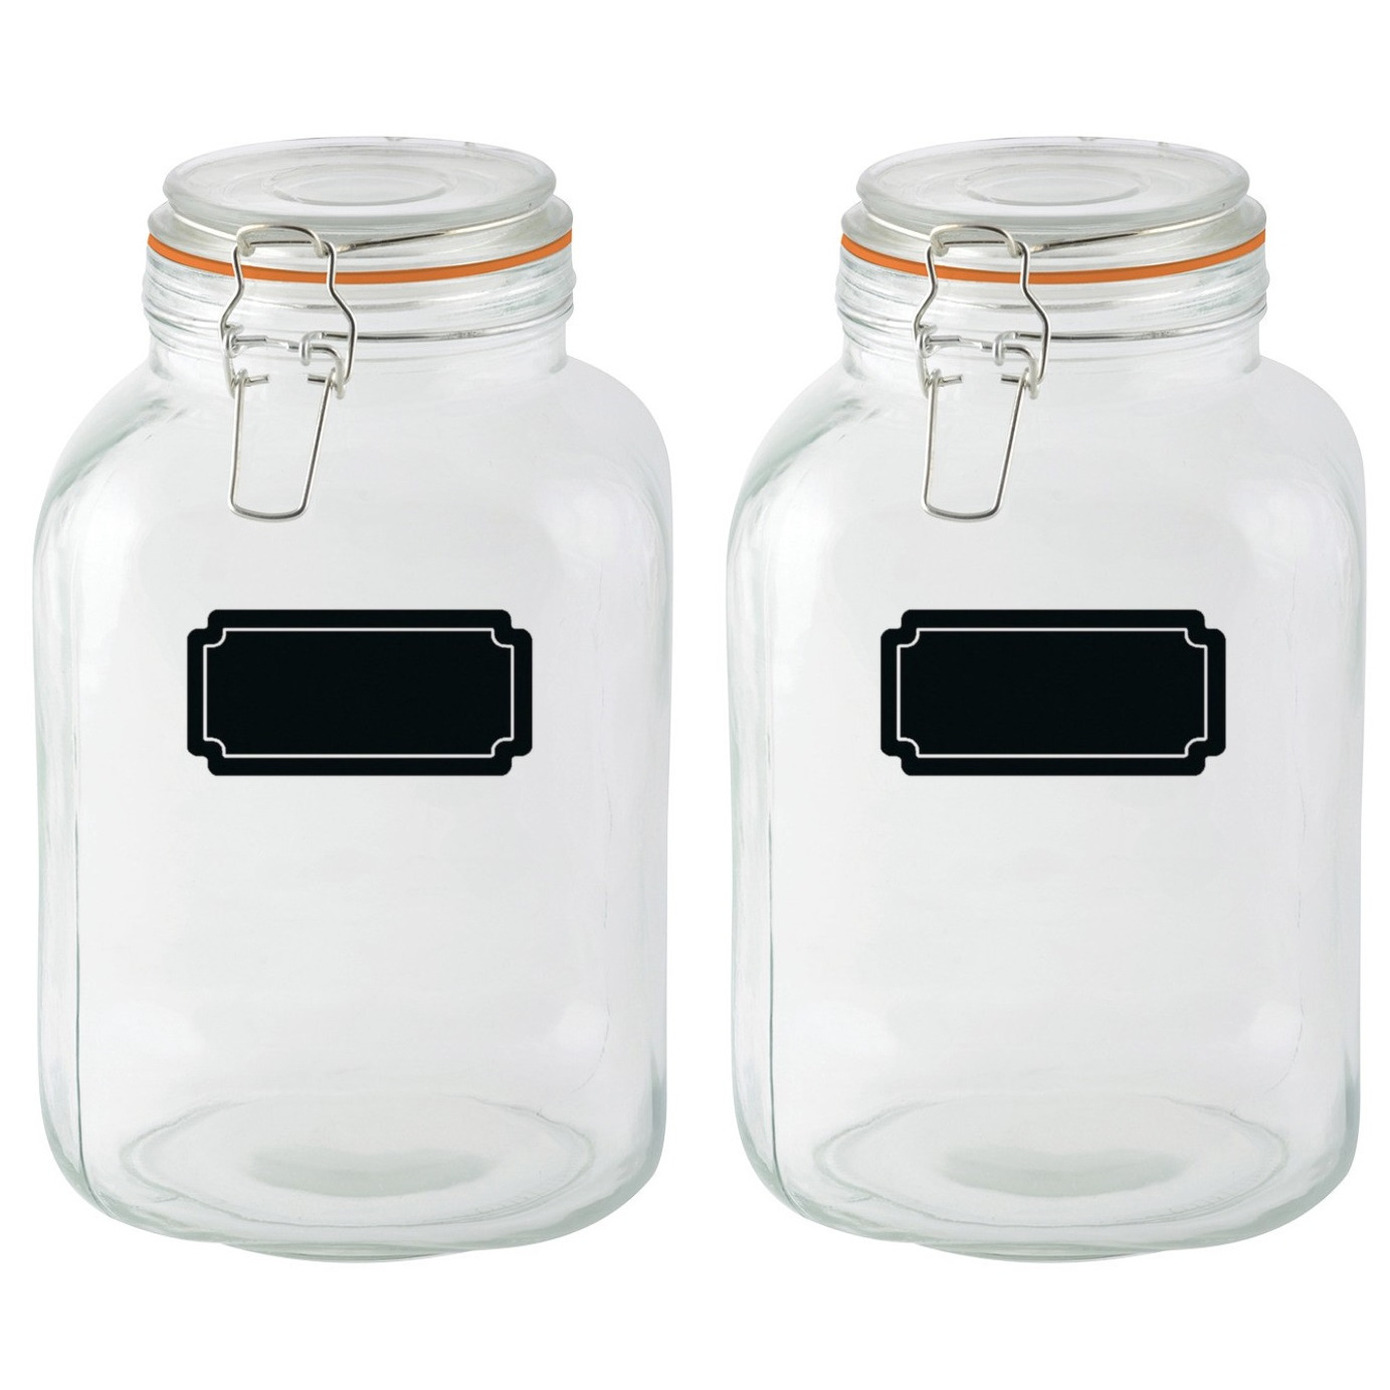 Weckpotten/inmaakpotten - 2x - 3L - glas - met beugelsluiting - incl. etiketten -